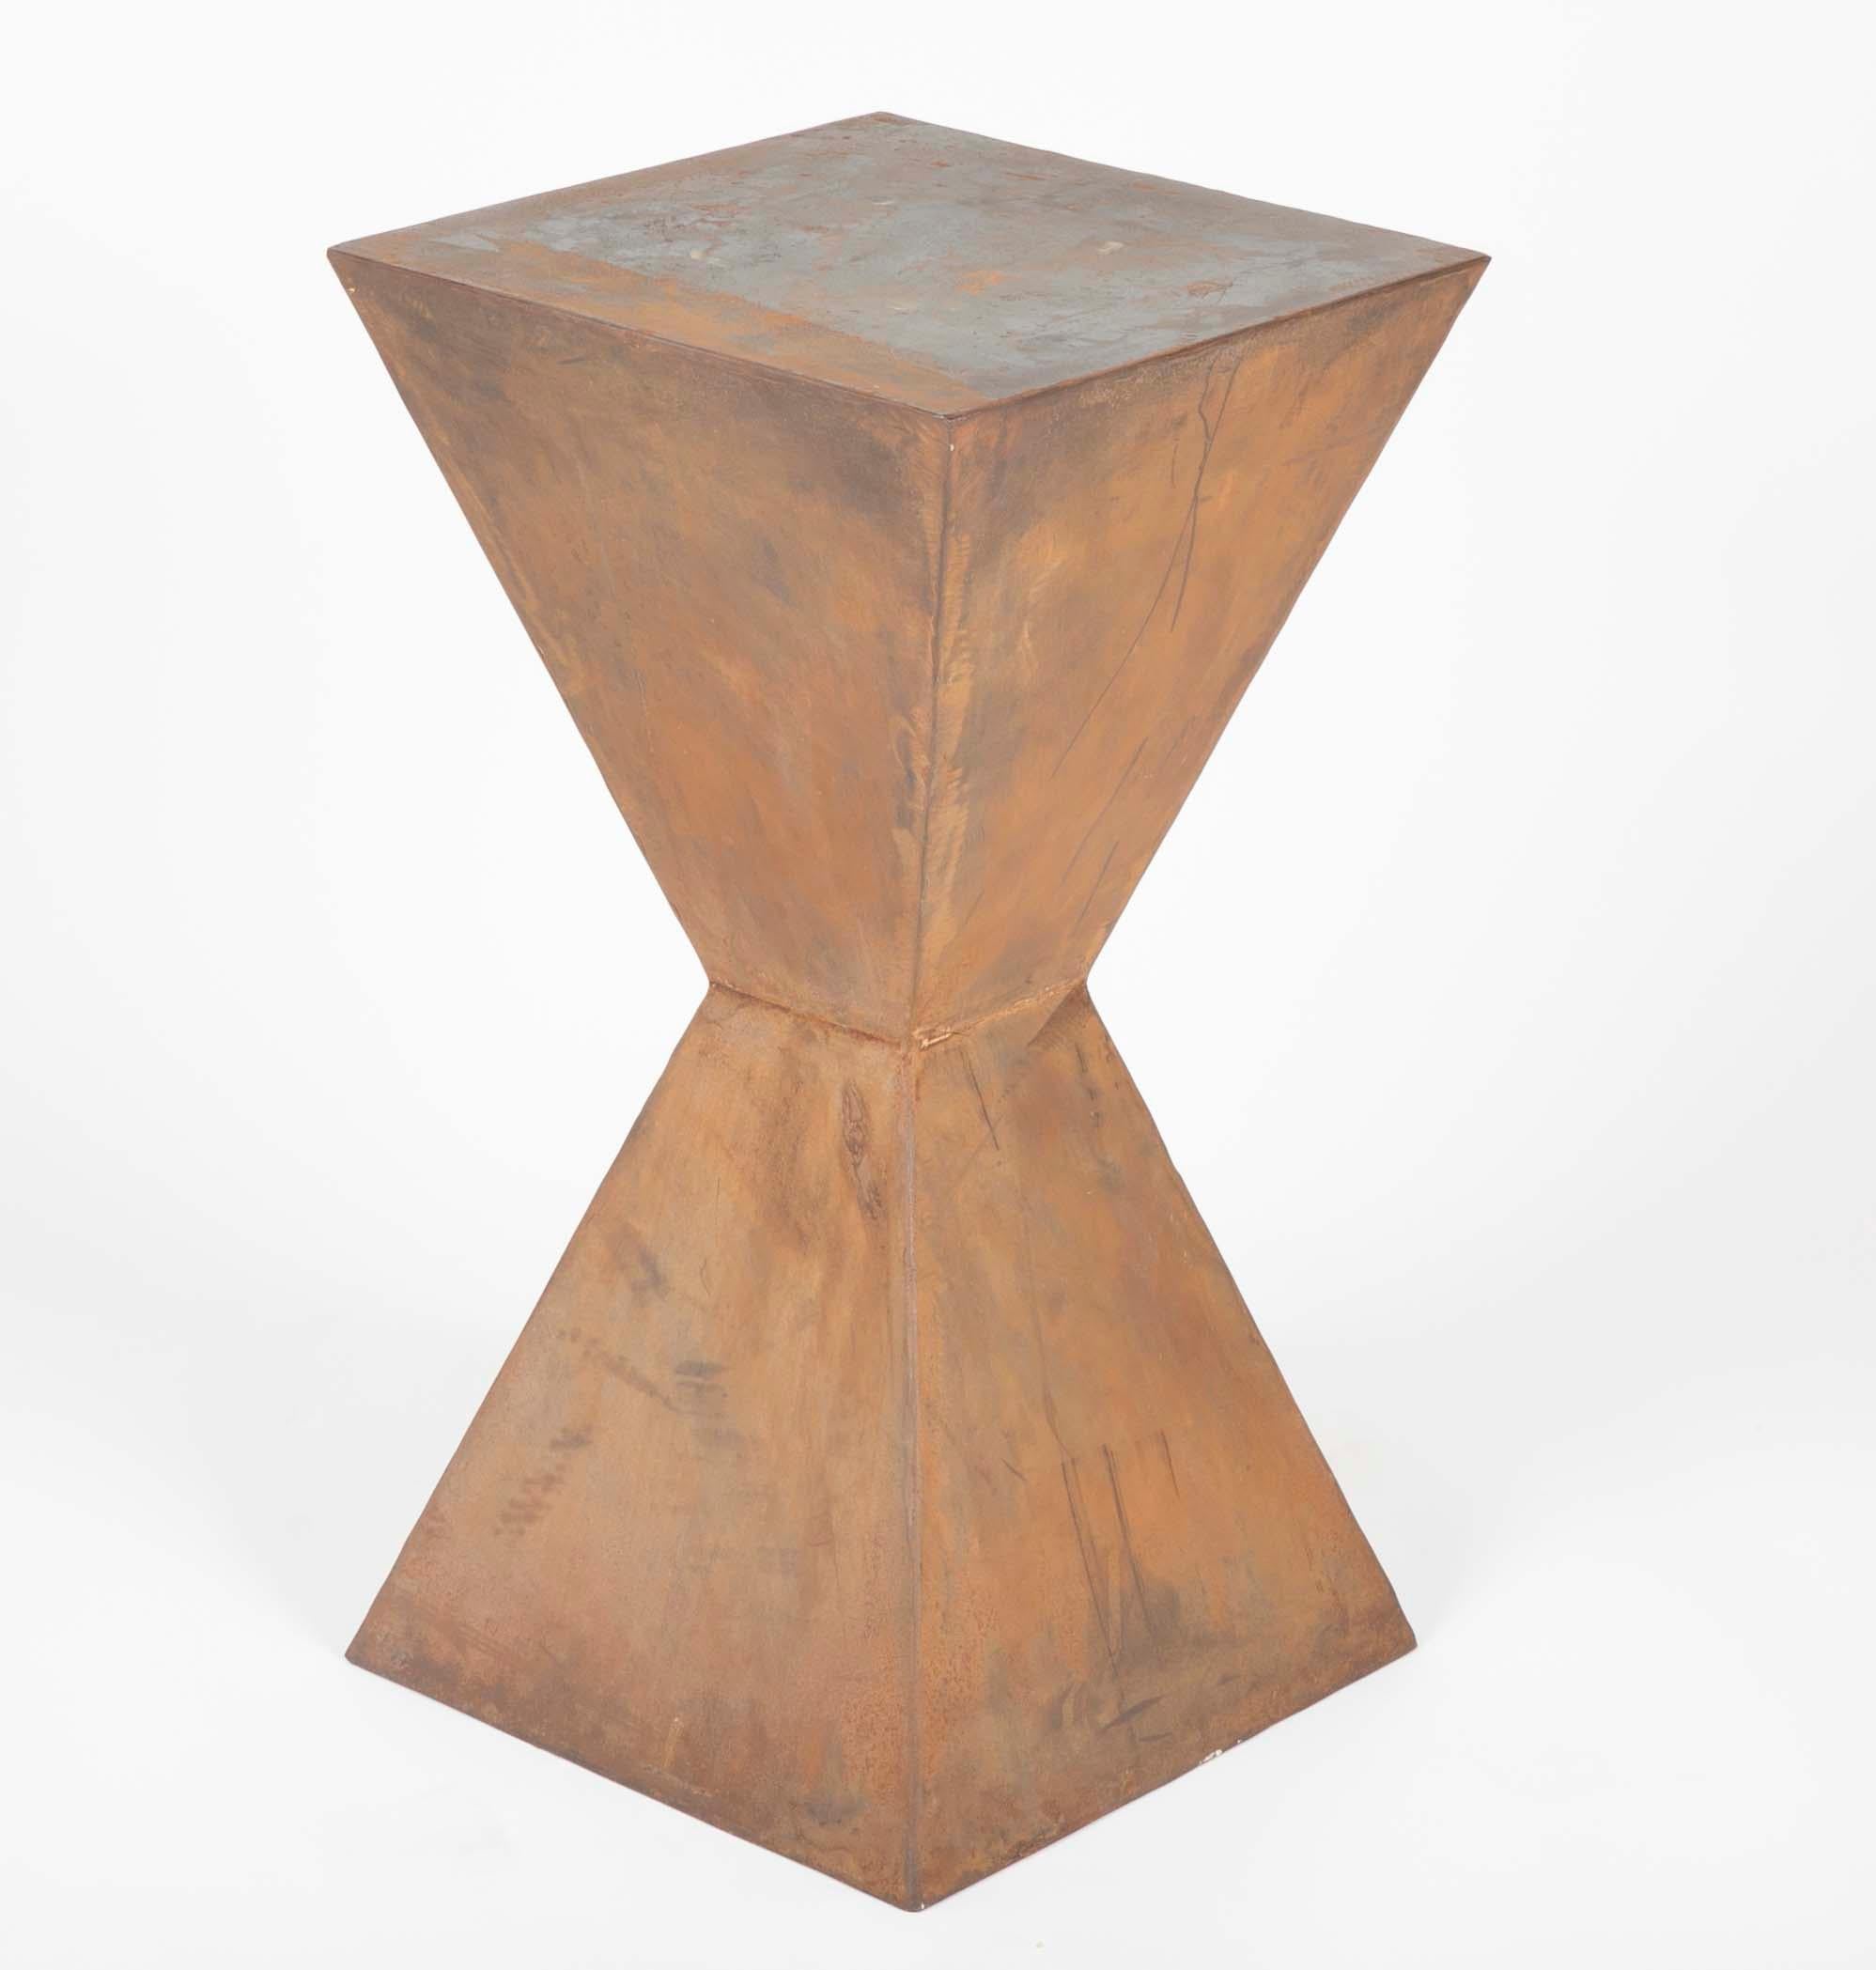 Paire impressionnante de tables d'appoint géométriques en acier, dans le style de Constantin Brancusi. Avec une patine douce de couleur rouille, ils peuvent également être utilisés comme de merveilleux piédestaux pour des sculptures ou d'autres